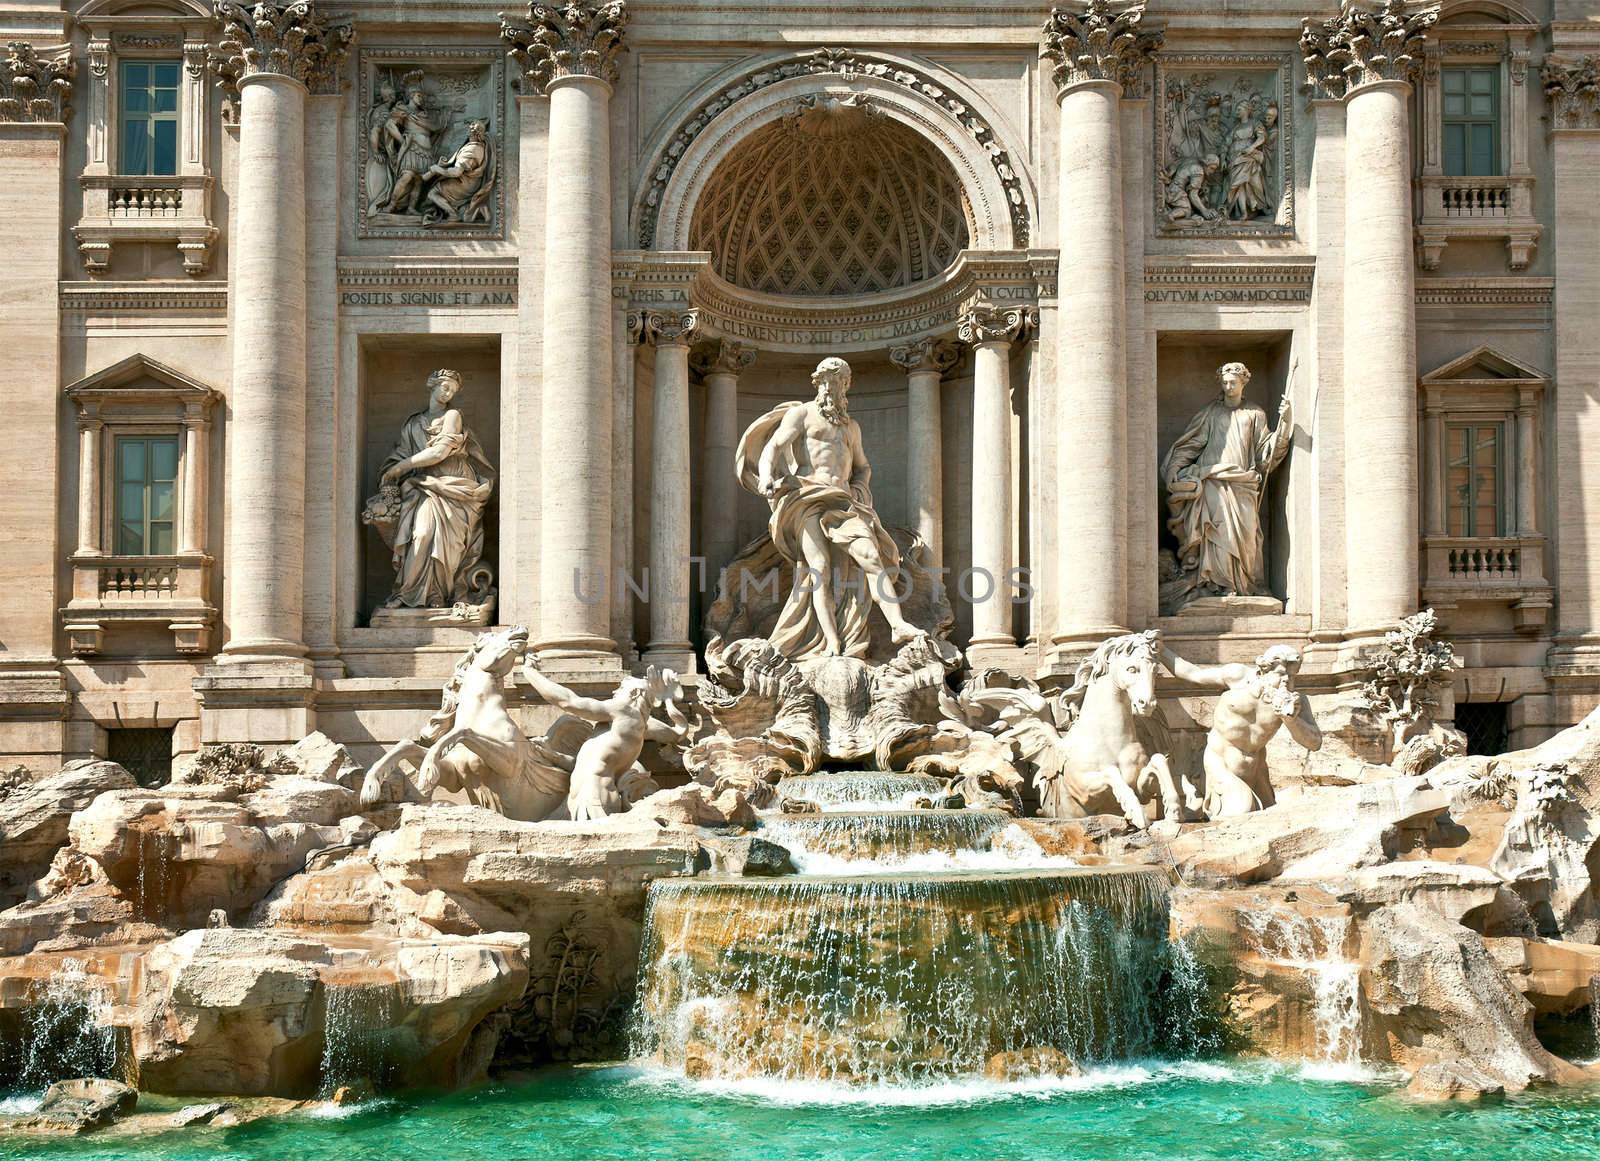 Trevi Fountain - famous landmark in Rome (Italy)  by majeczka